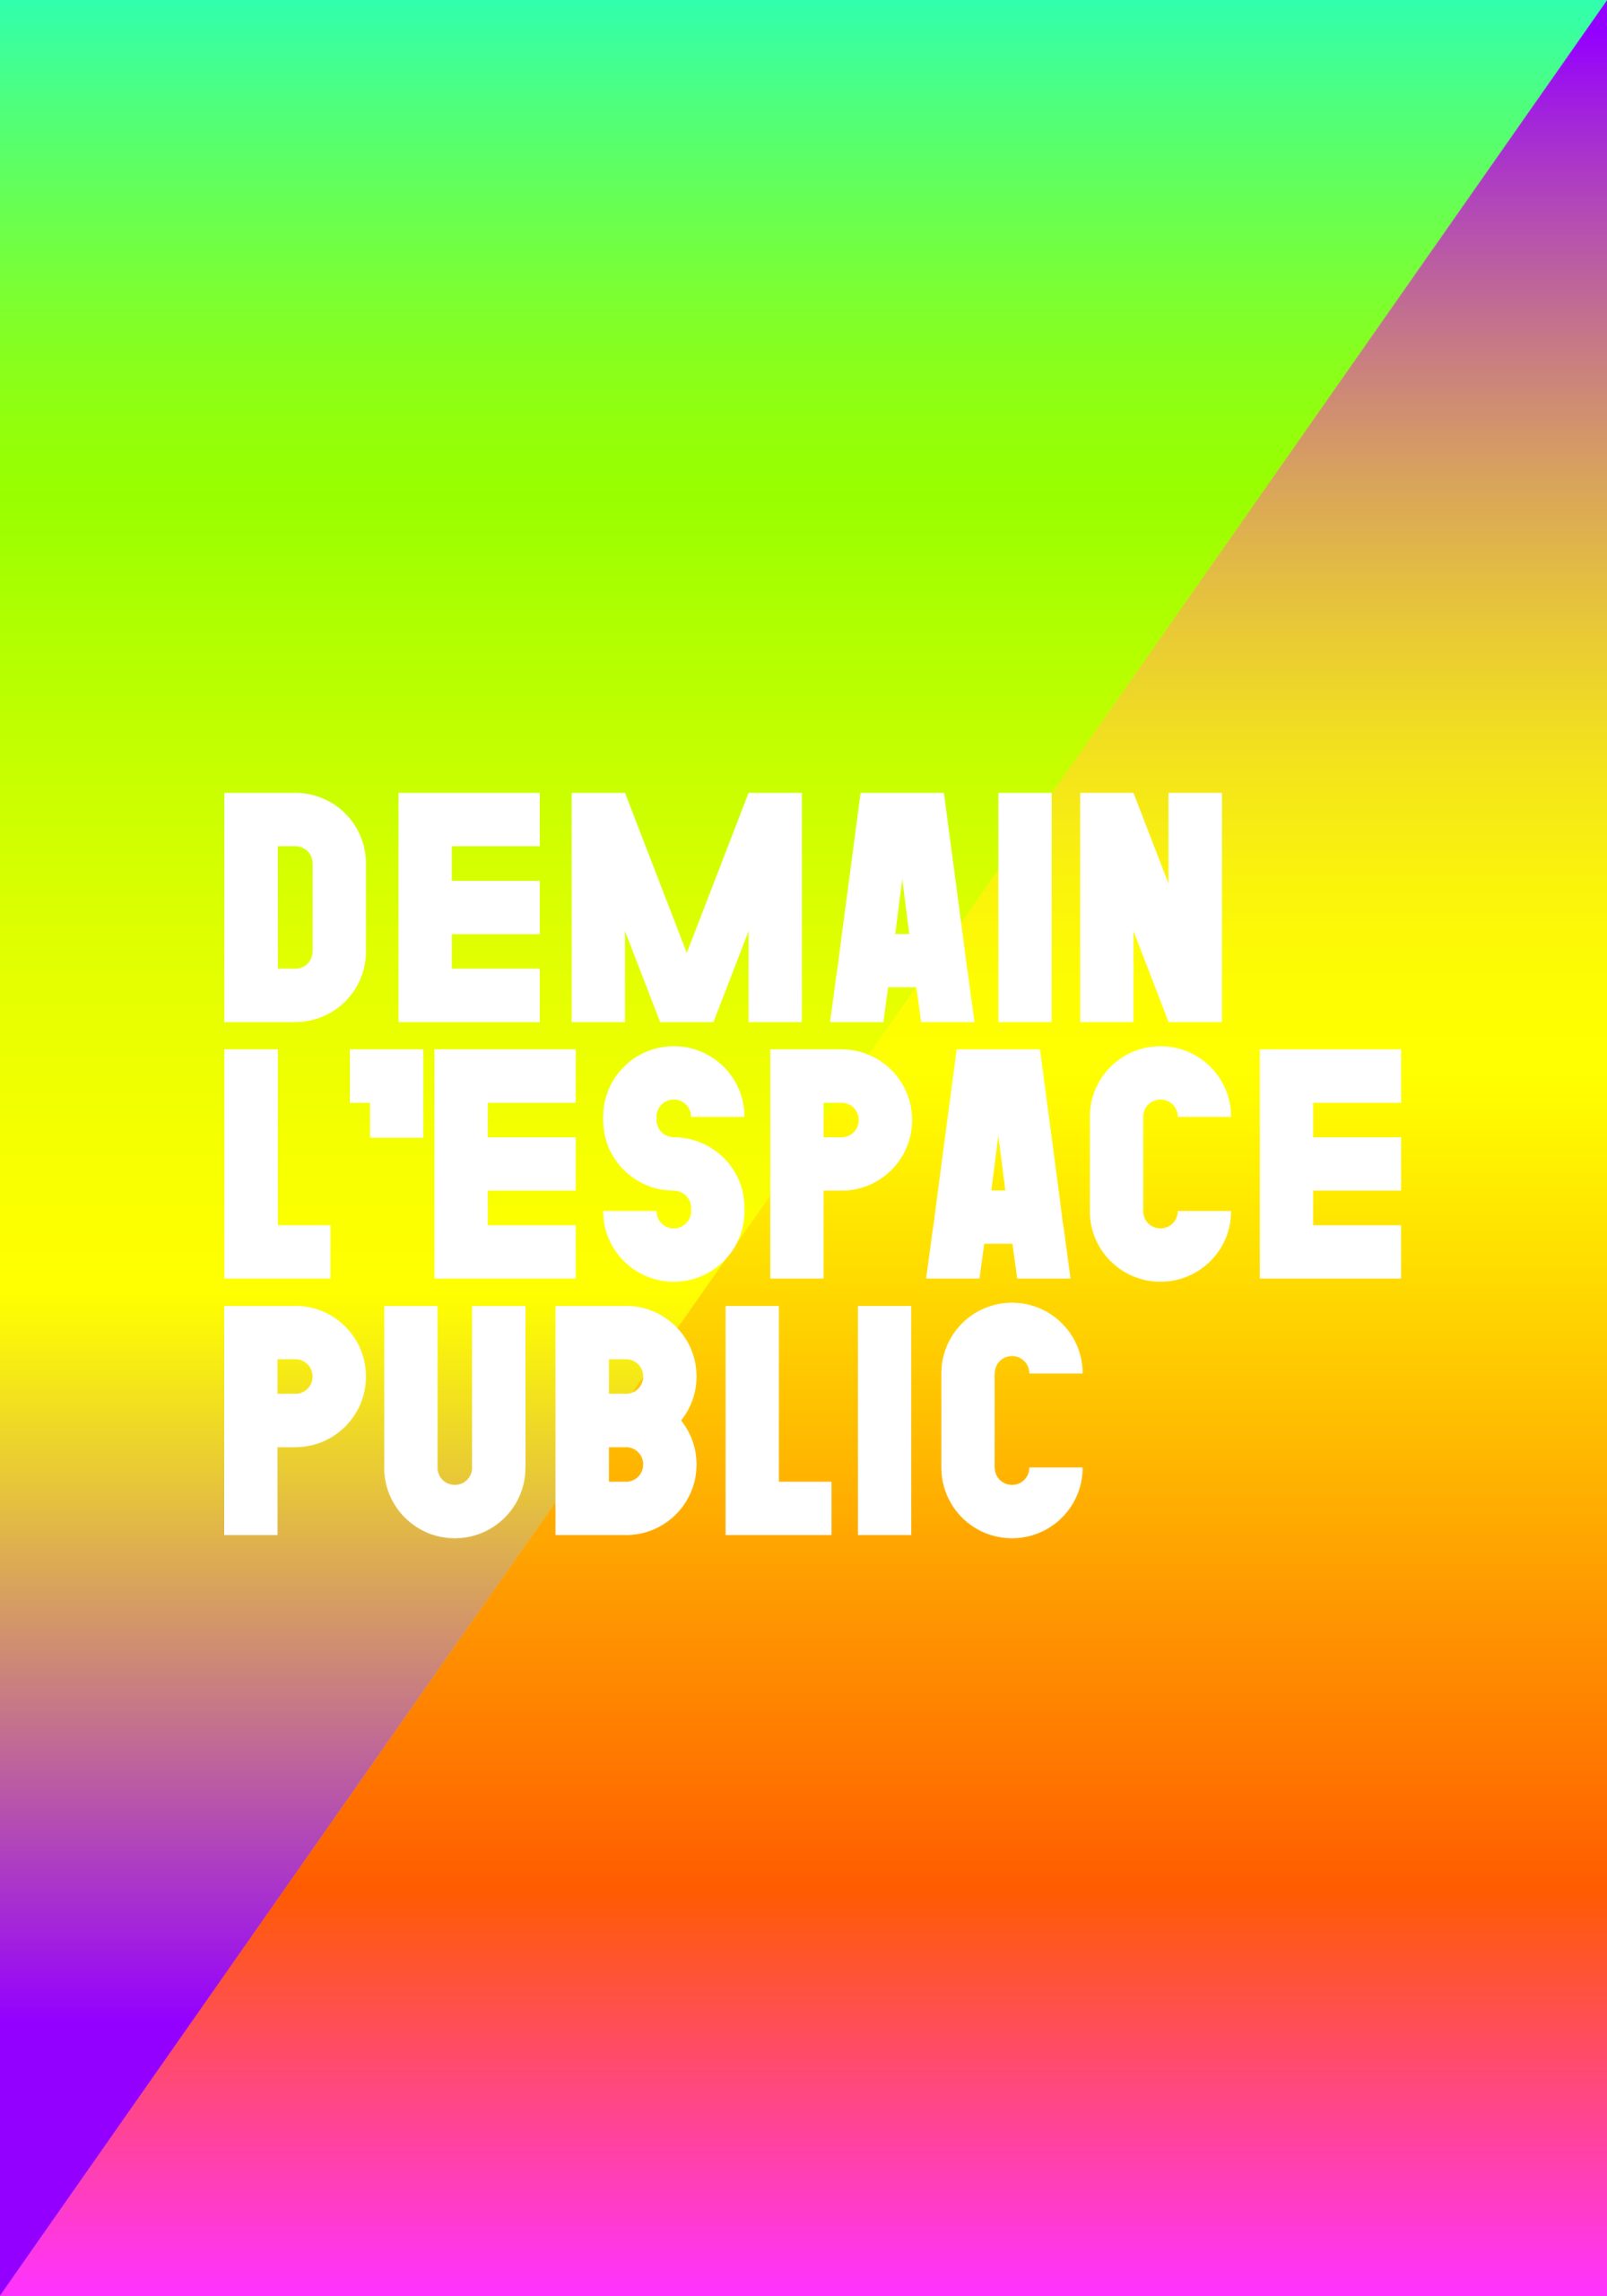 Demain, l’espace public. Cycle de rencontres inspirantes.